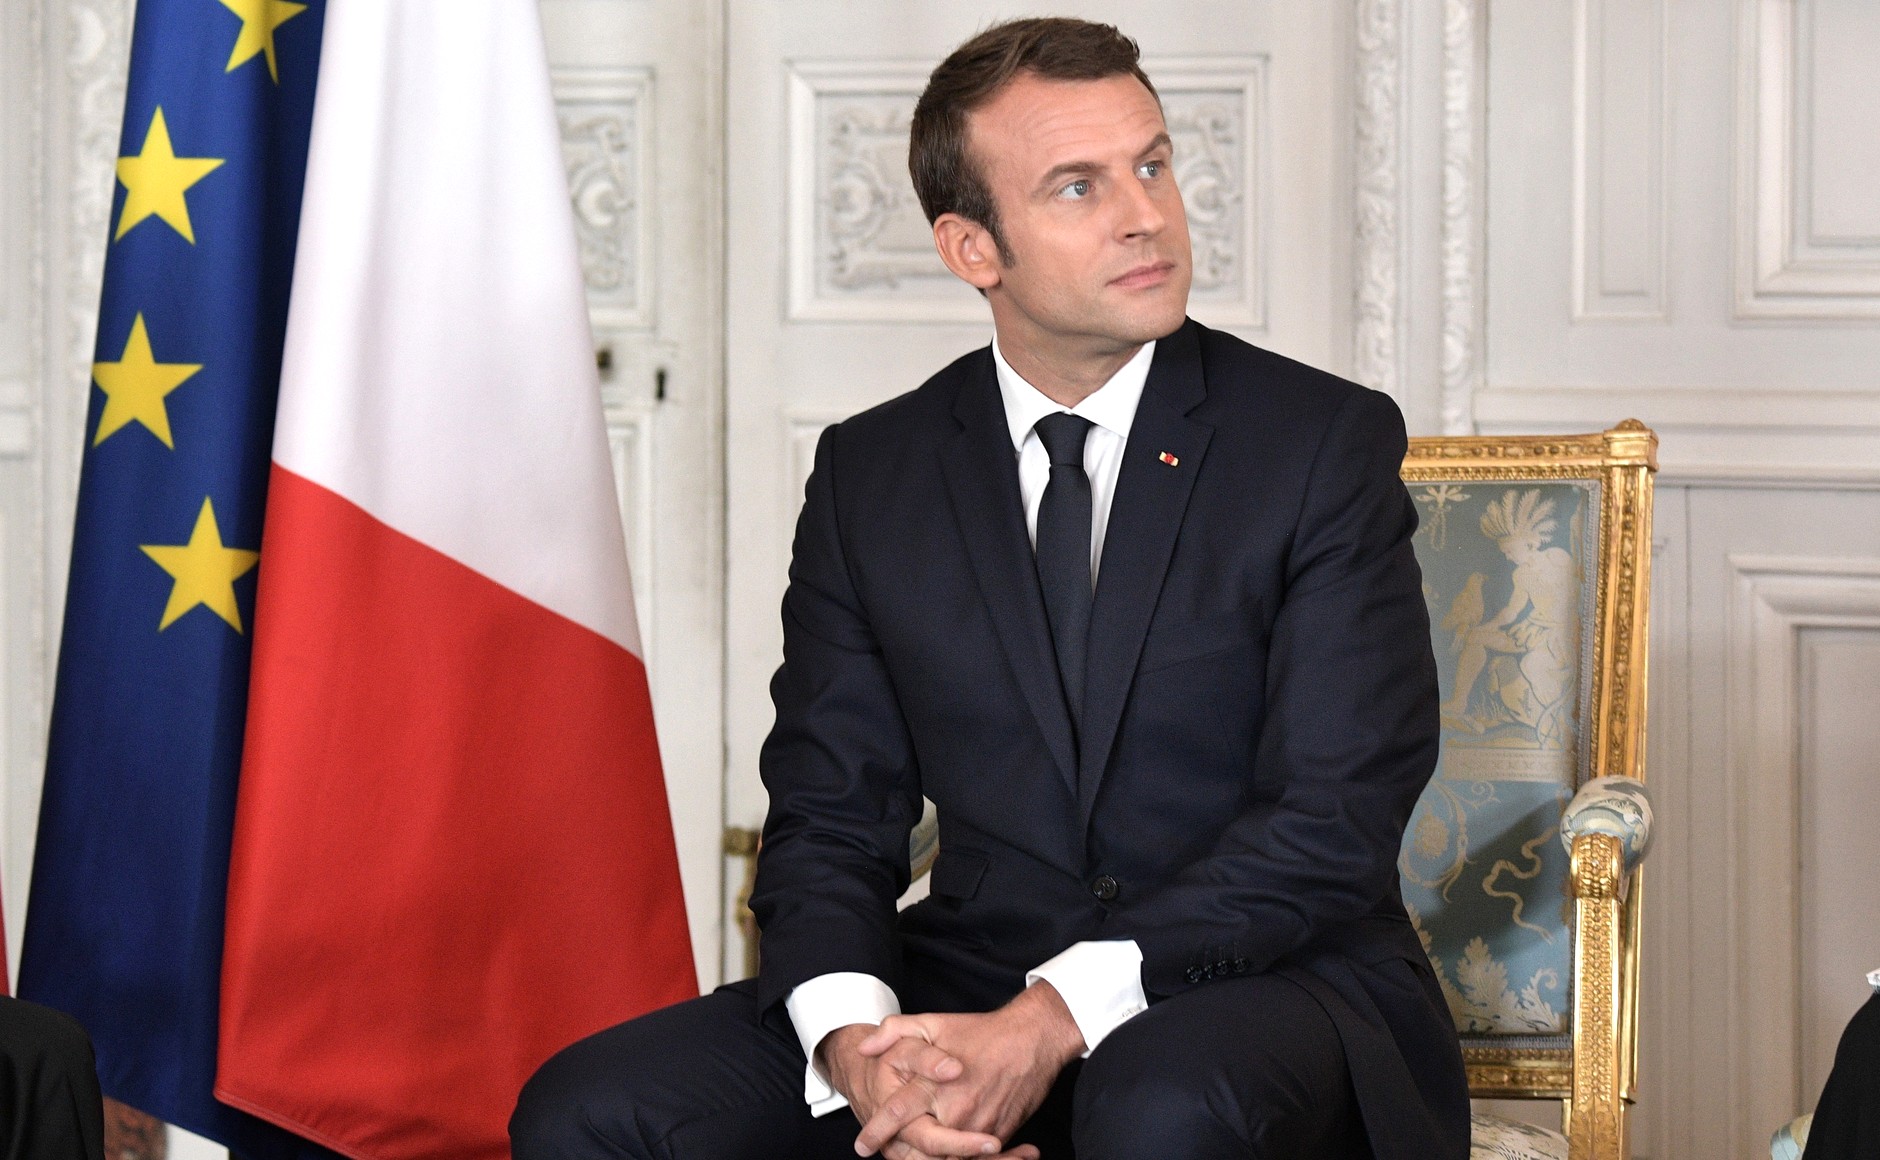     Emmanuel Macron s'adressera à la nation ce dimanche

